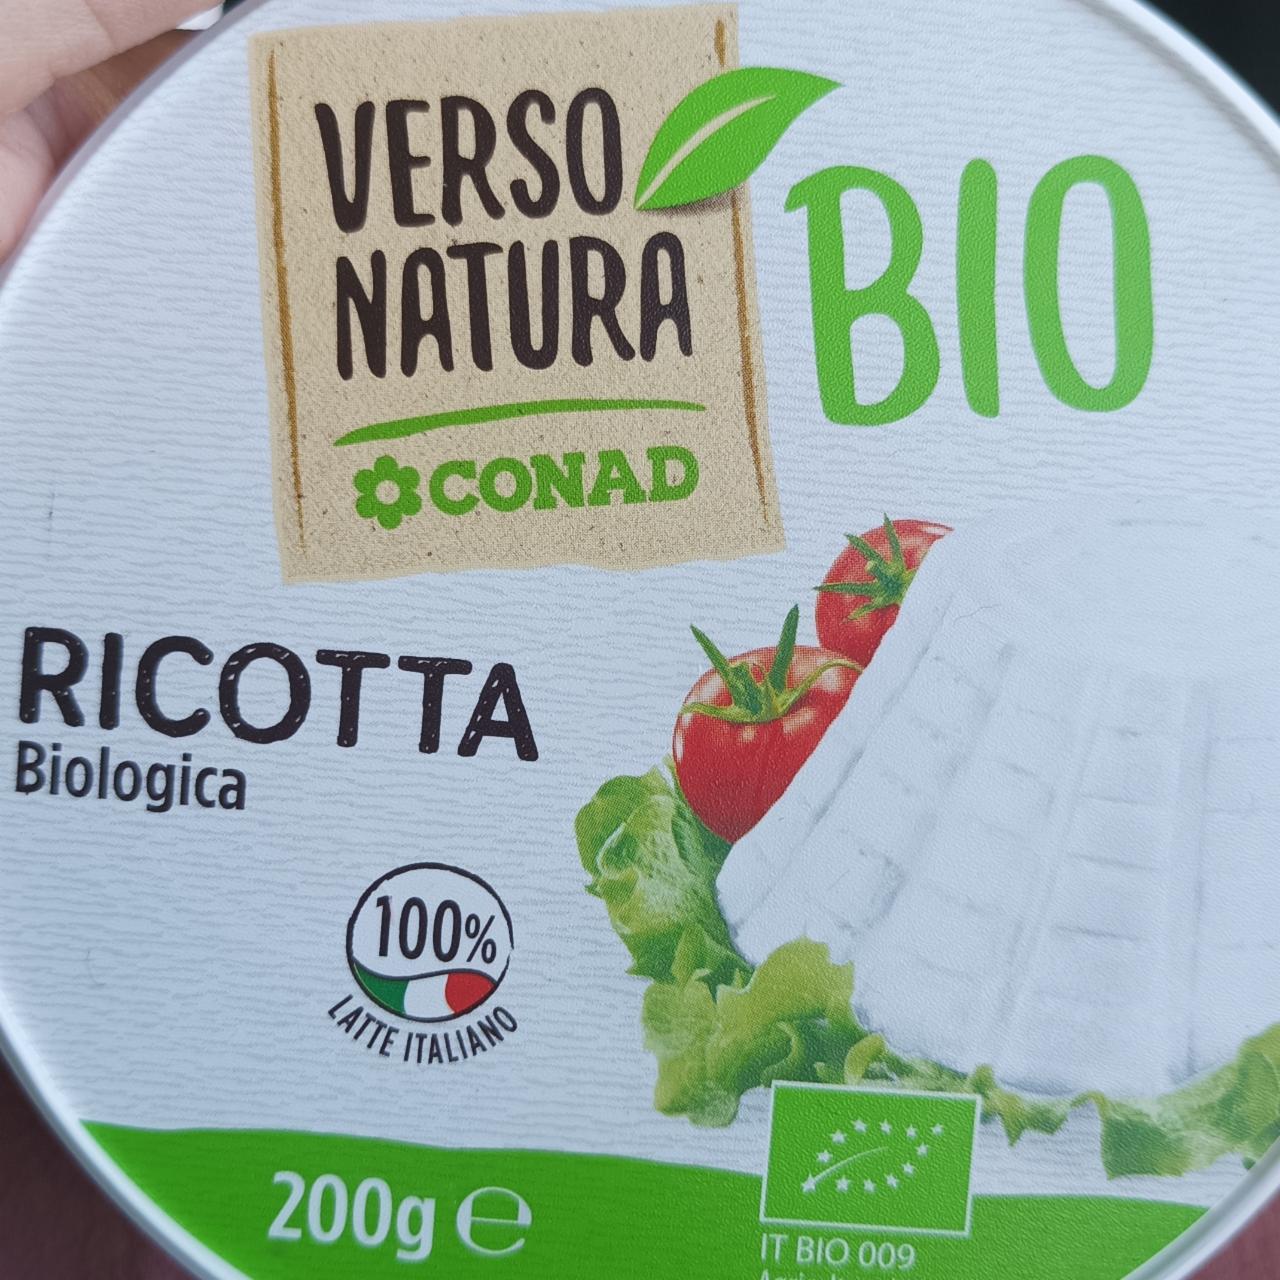 Fotografie - Ricotta Bio Conad Verso Natura